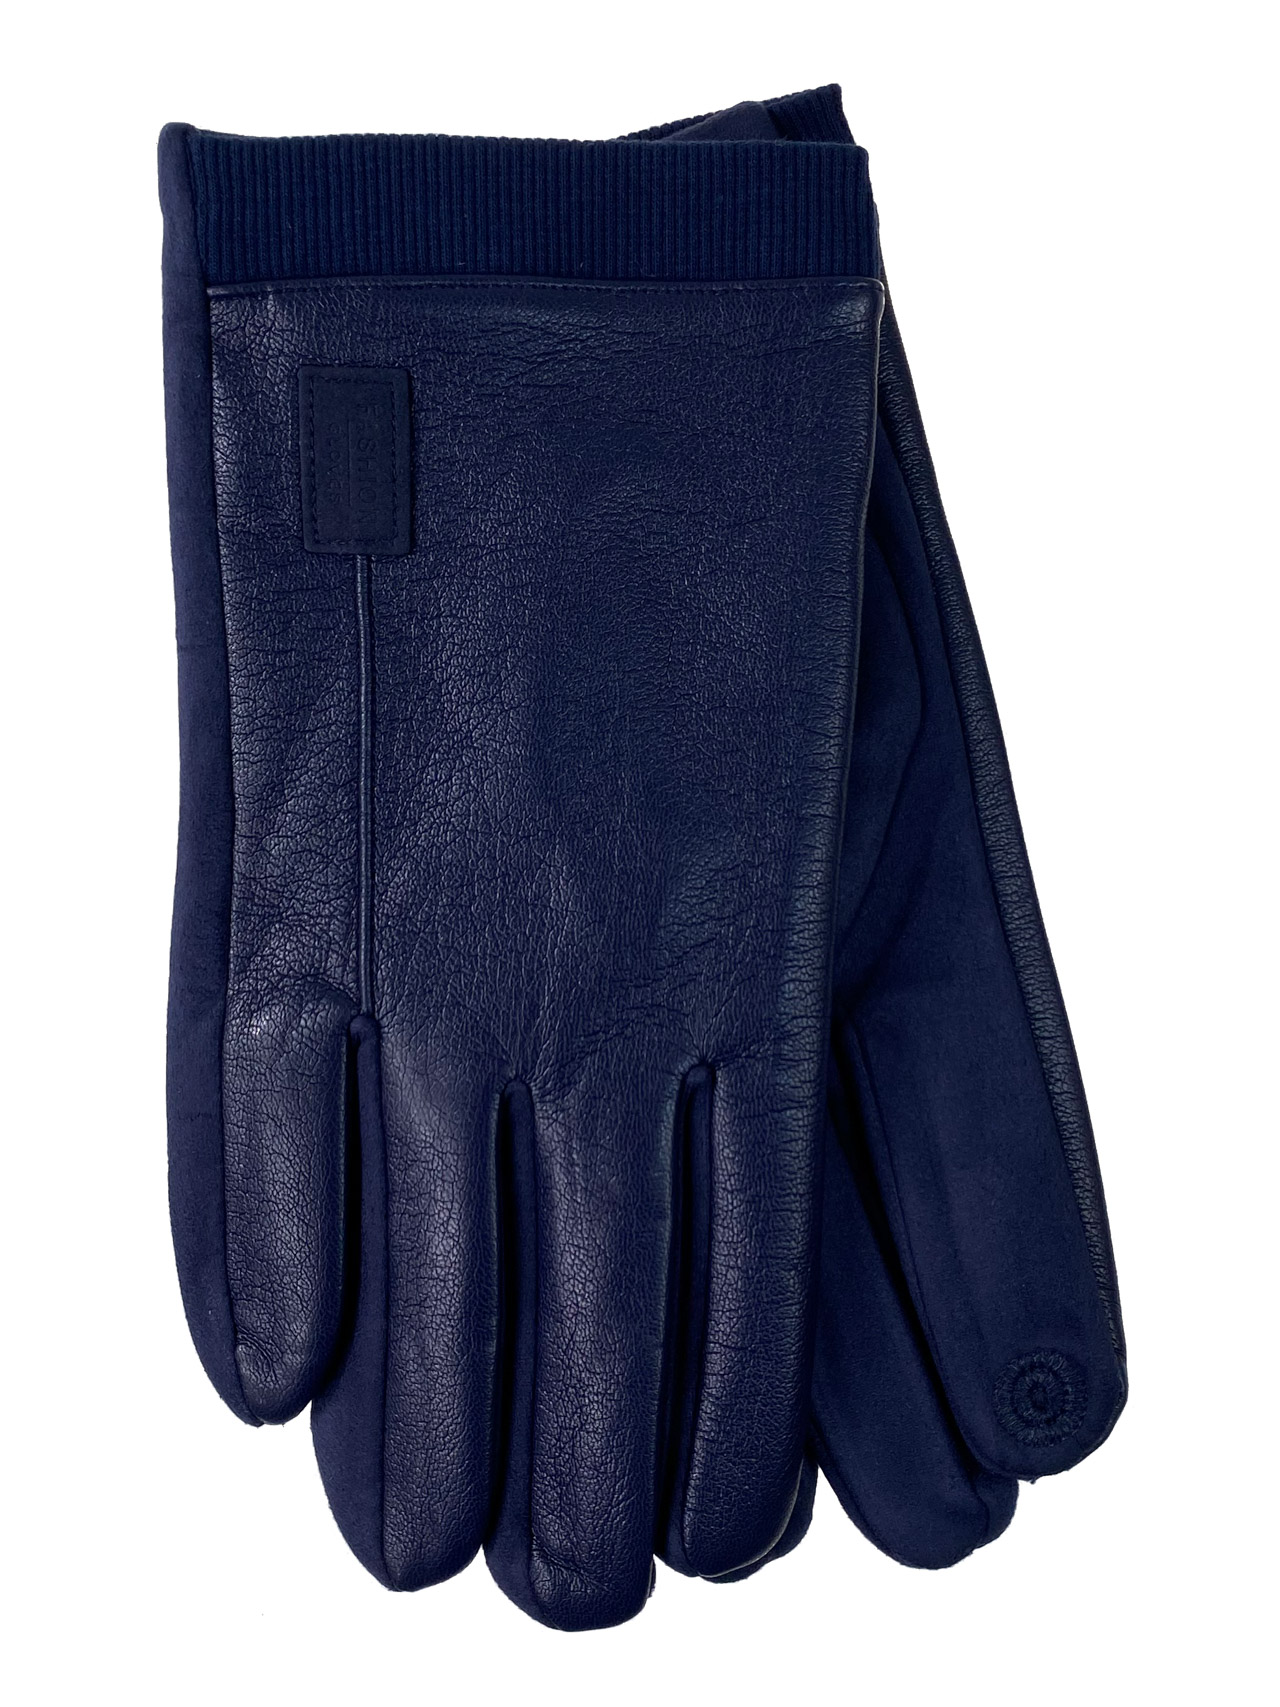 На фото 1 - Демисезонние мужские перчатки